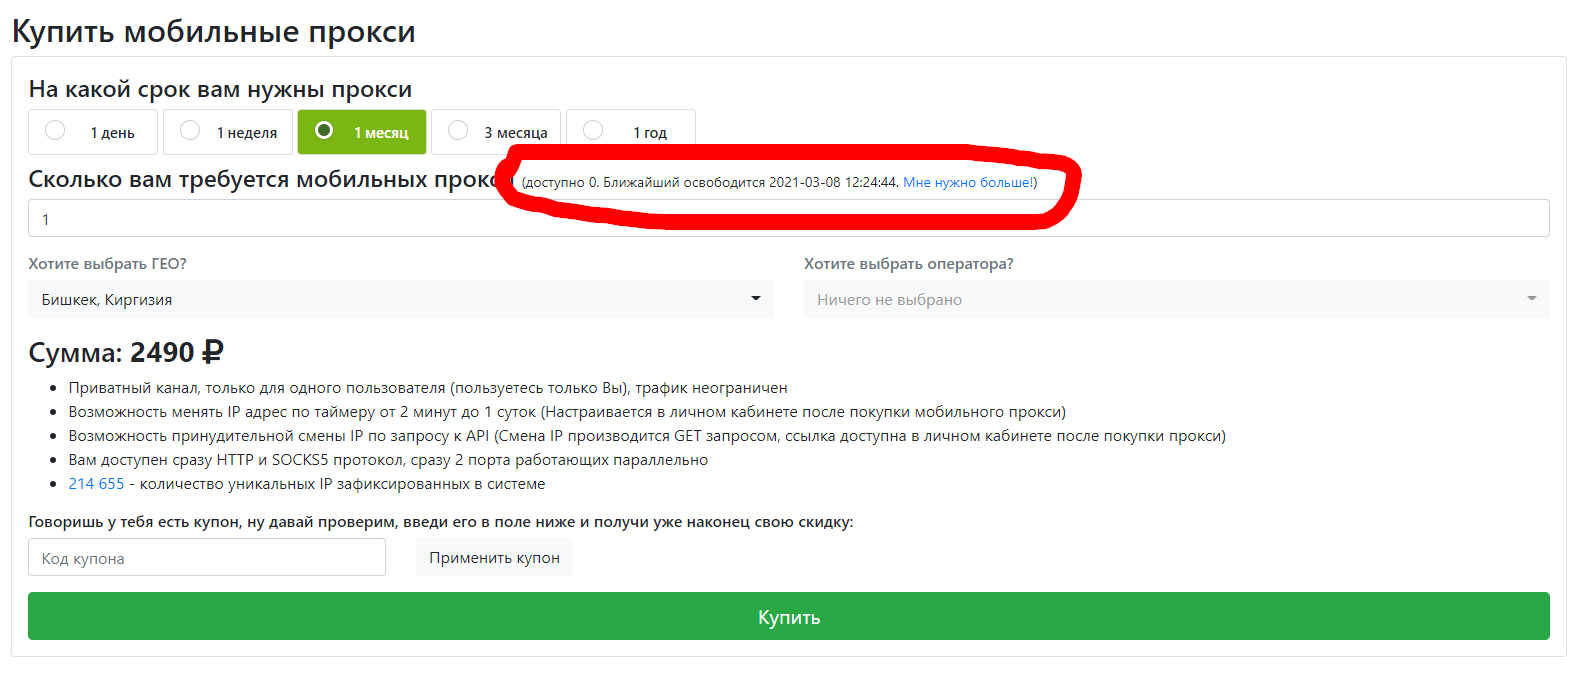 Прокси для авито mobilnye proxy kupit ru. Мобильные прокси реклама. Мобильные прокси от компании mobileproxy.Space: обзор сайта.